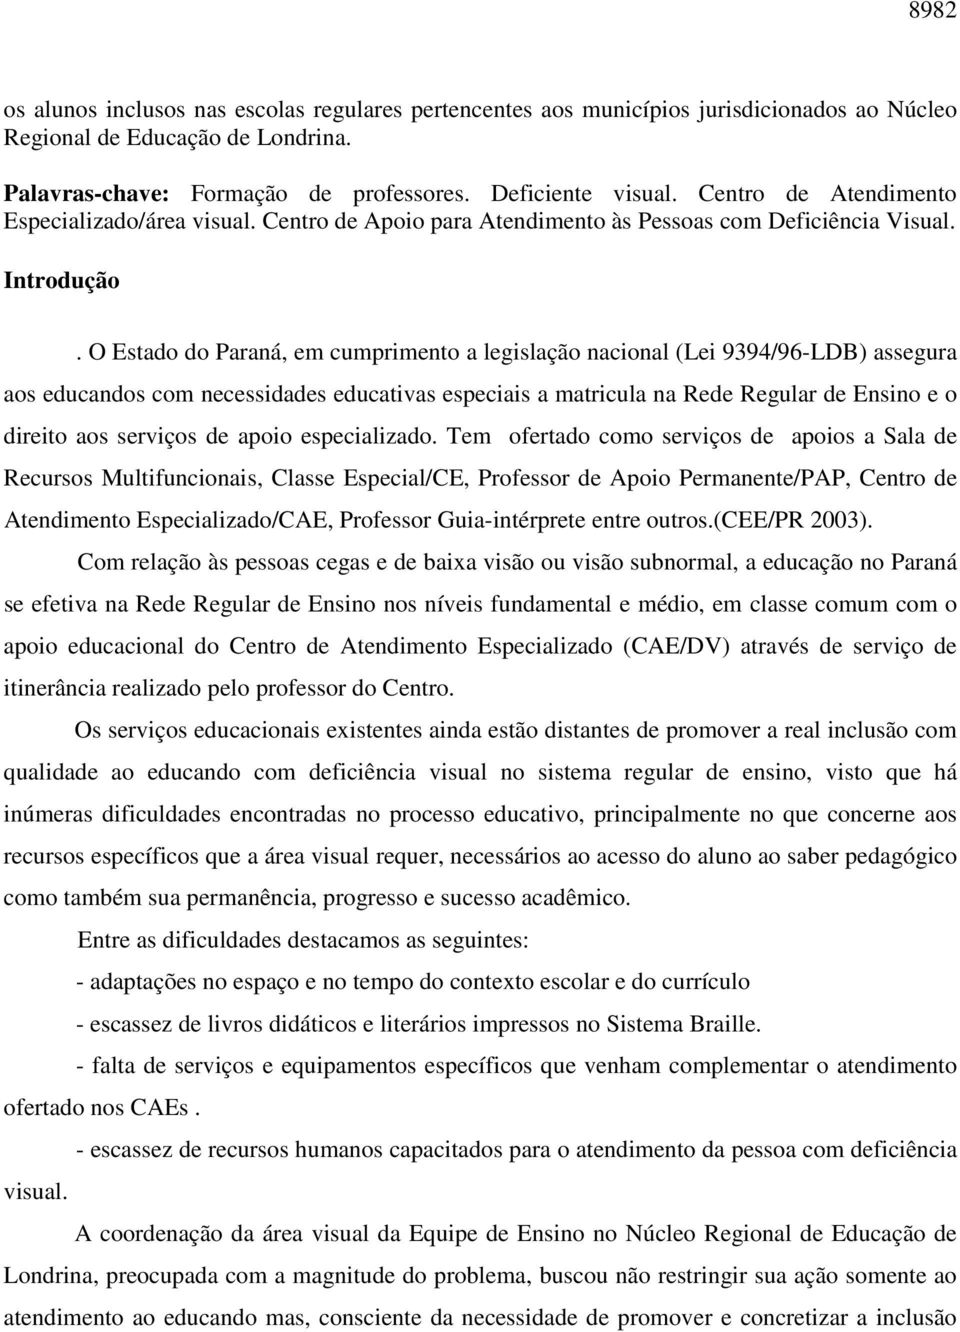 O Estado do Paraná, em cumprimento a legislação nacional (Lei 9394/96-LDB) assegura aos educandos com necessidades educativas especiais a matricula na Rede Regular de Ensino e o direito aos serviços